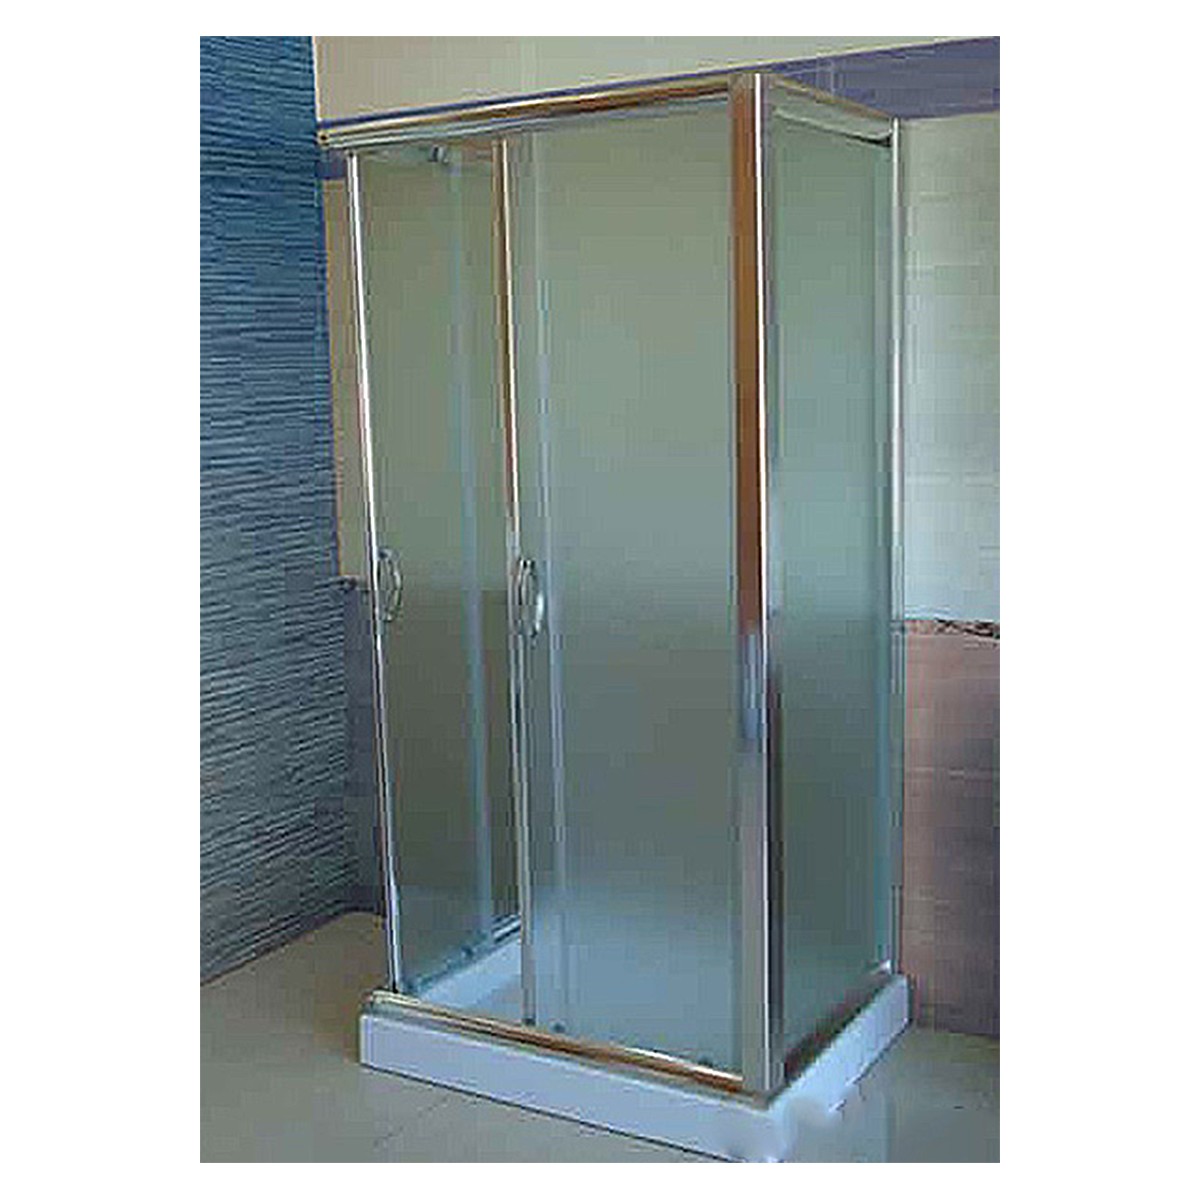 Cabine de douche à 3 côtés en cristal transparent ou satiné de 6 mm